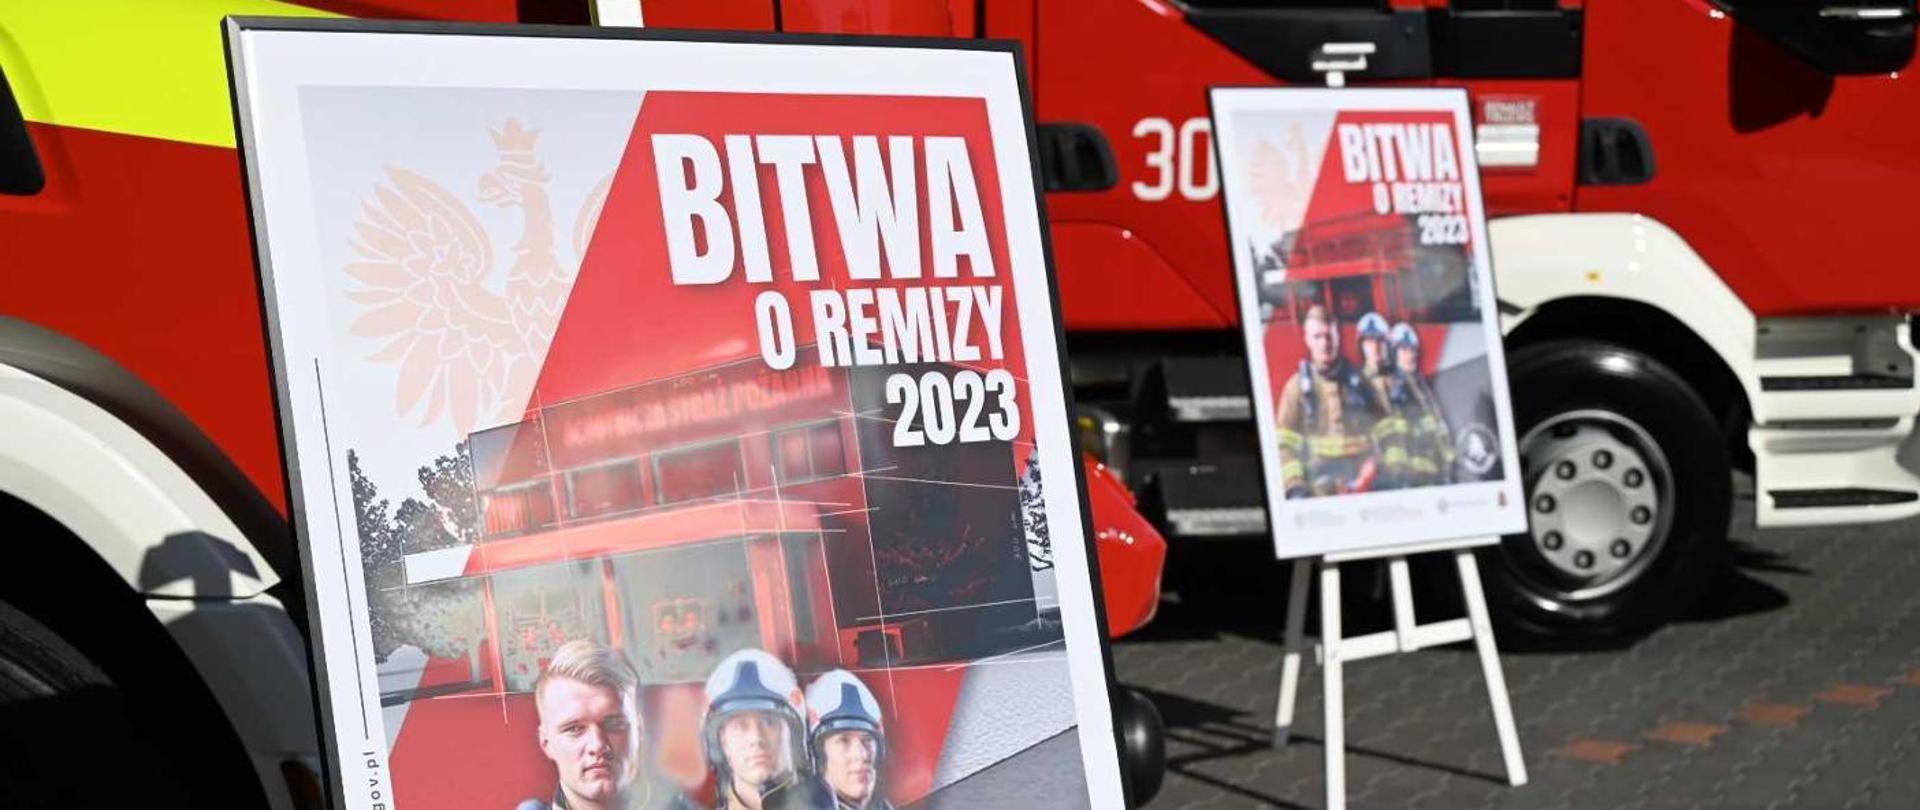 Dwa samochody ciężarowe straży pożarnej barwy czerwonej na których tle stoją na stojaku dwa banery reklamowe z napisem bitwa o remizy 2023